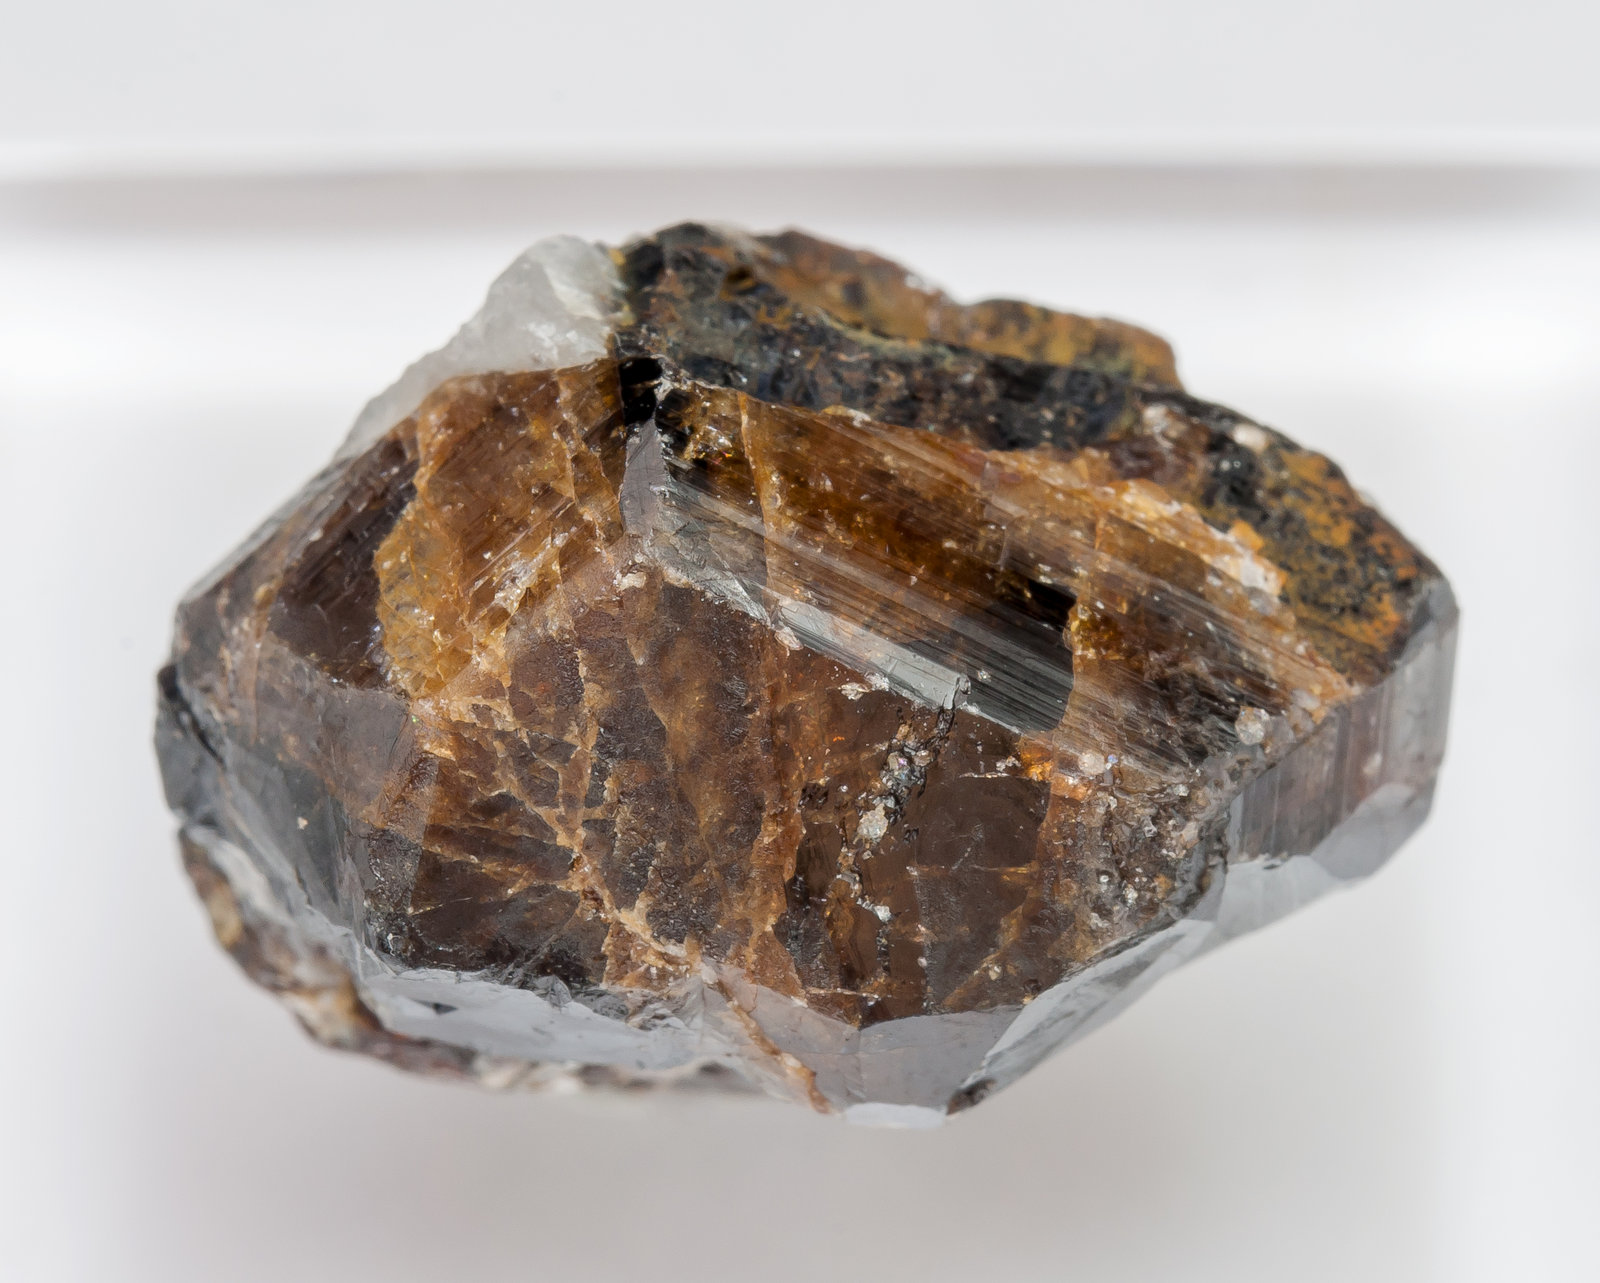 specimens/s_imagesAM1/Cassiterite-CC13AM1t.jpg